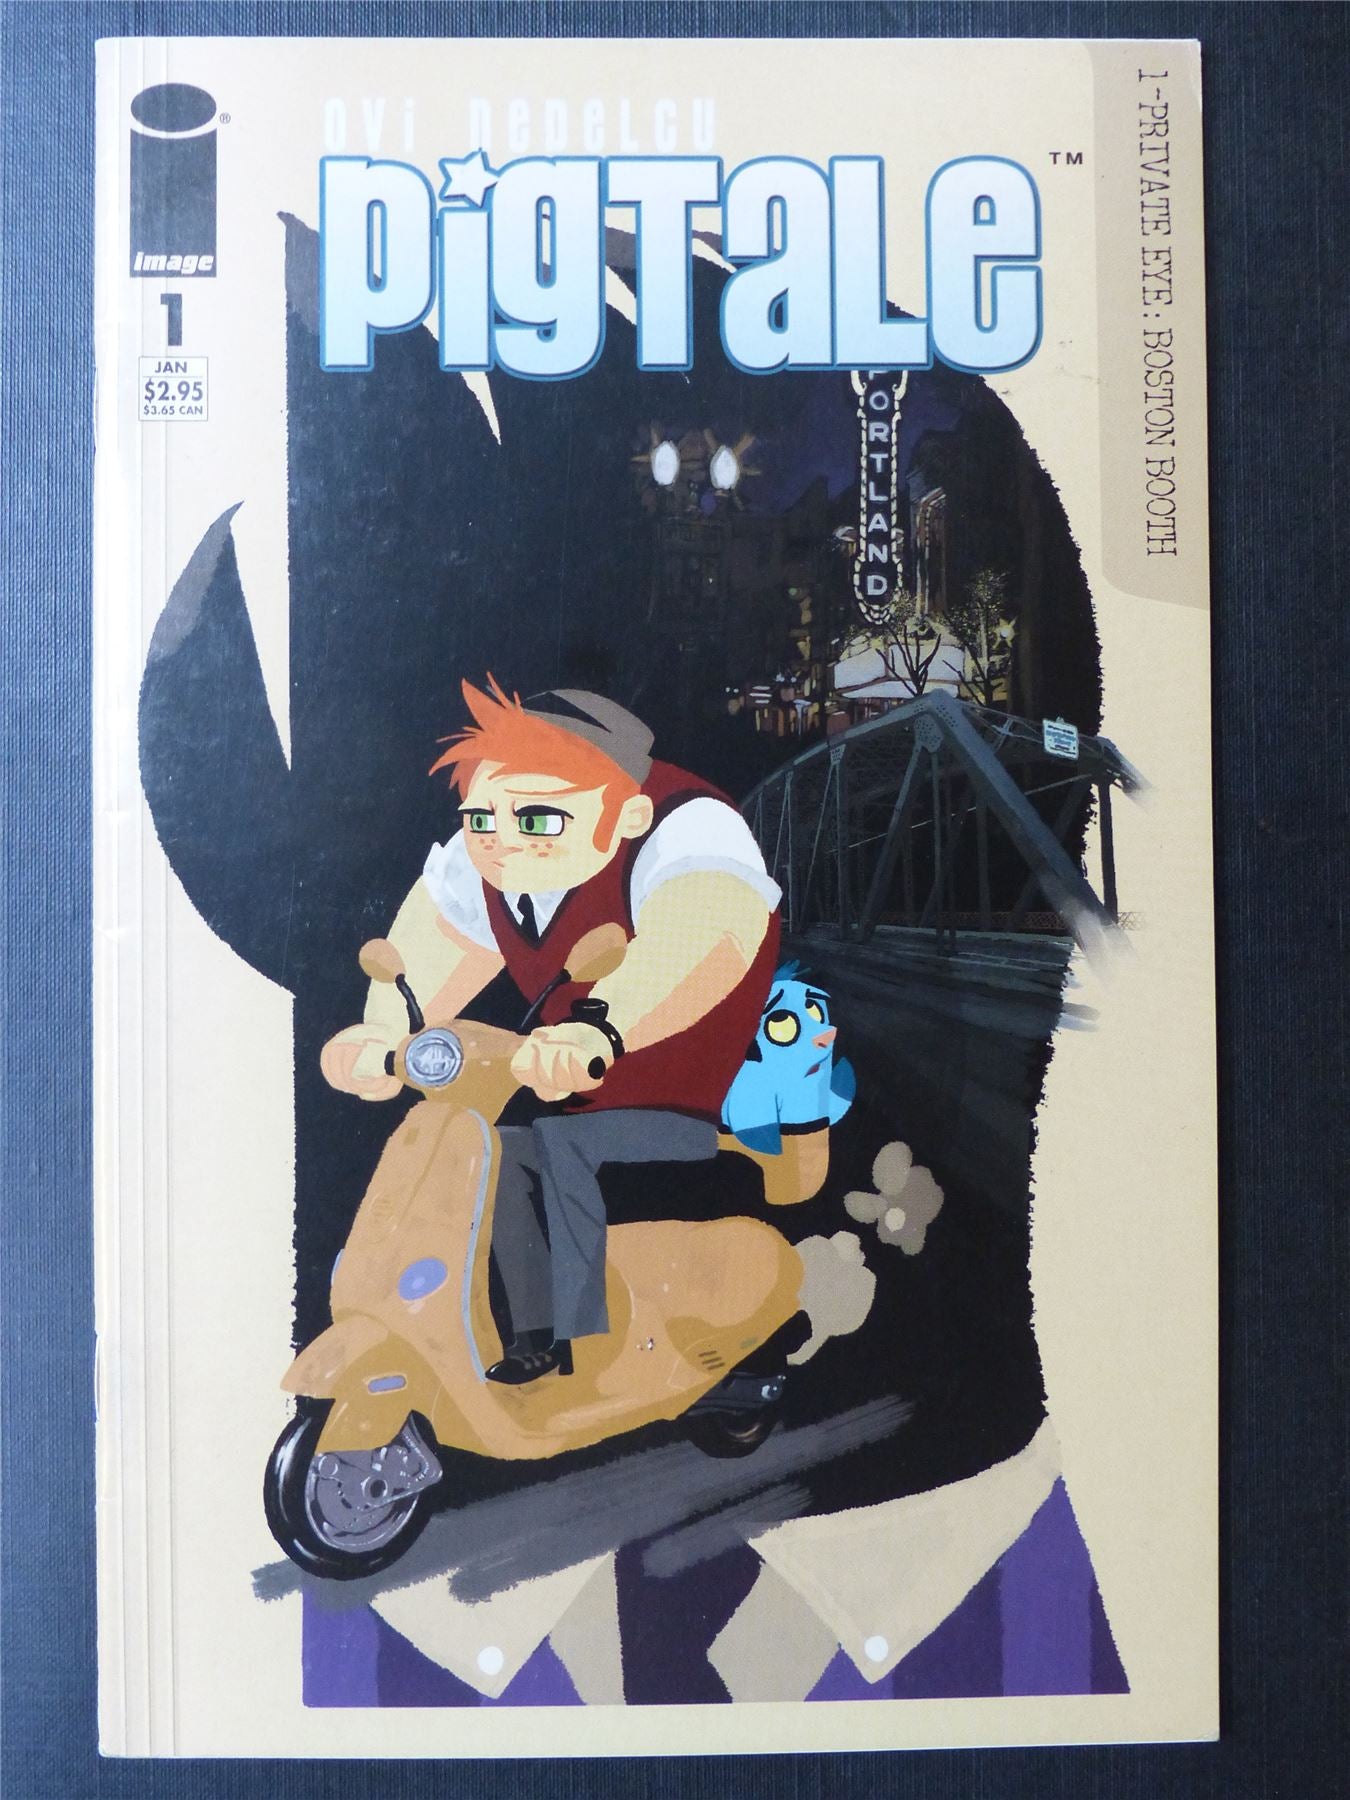 PIGTALE #1 - Image Comics #5GN